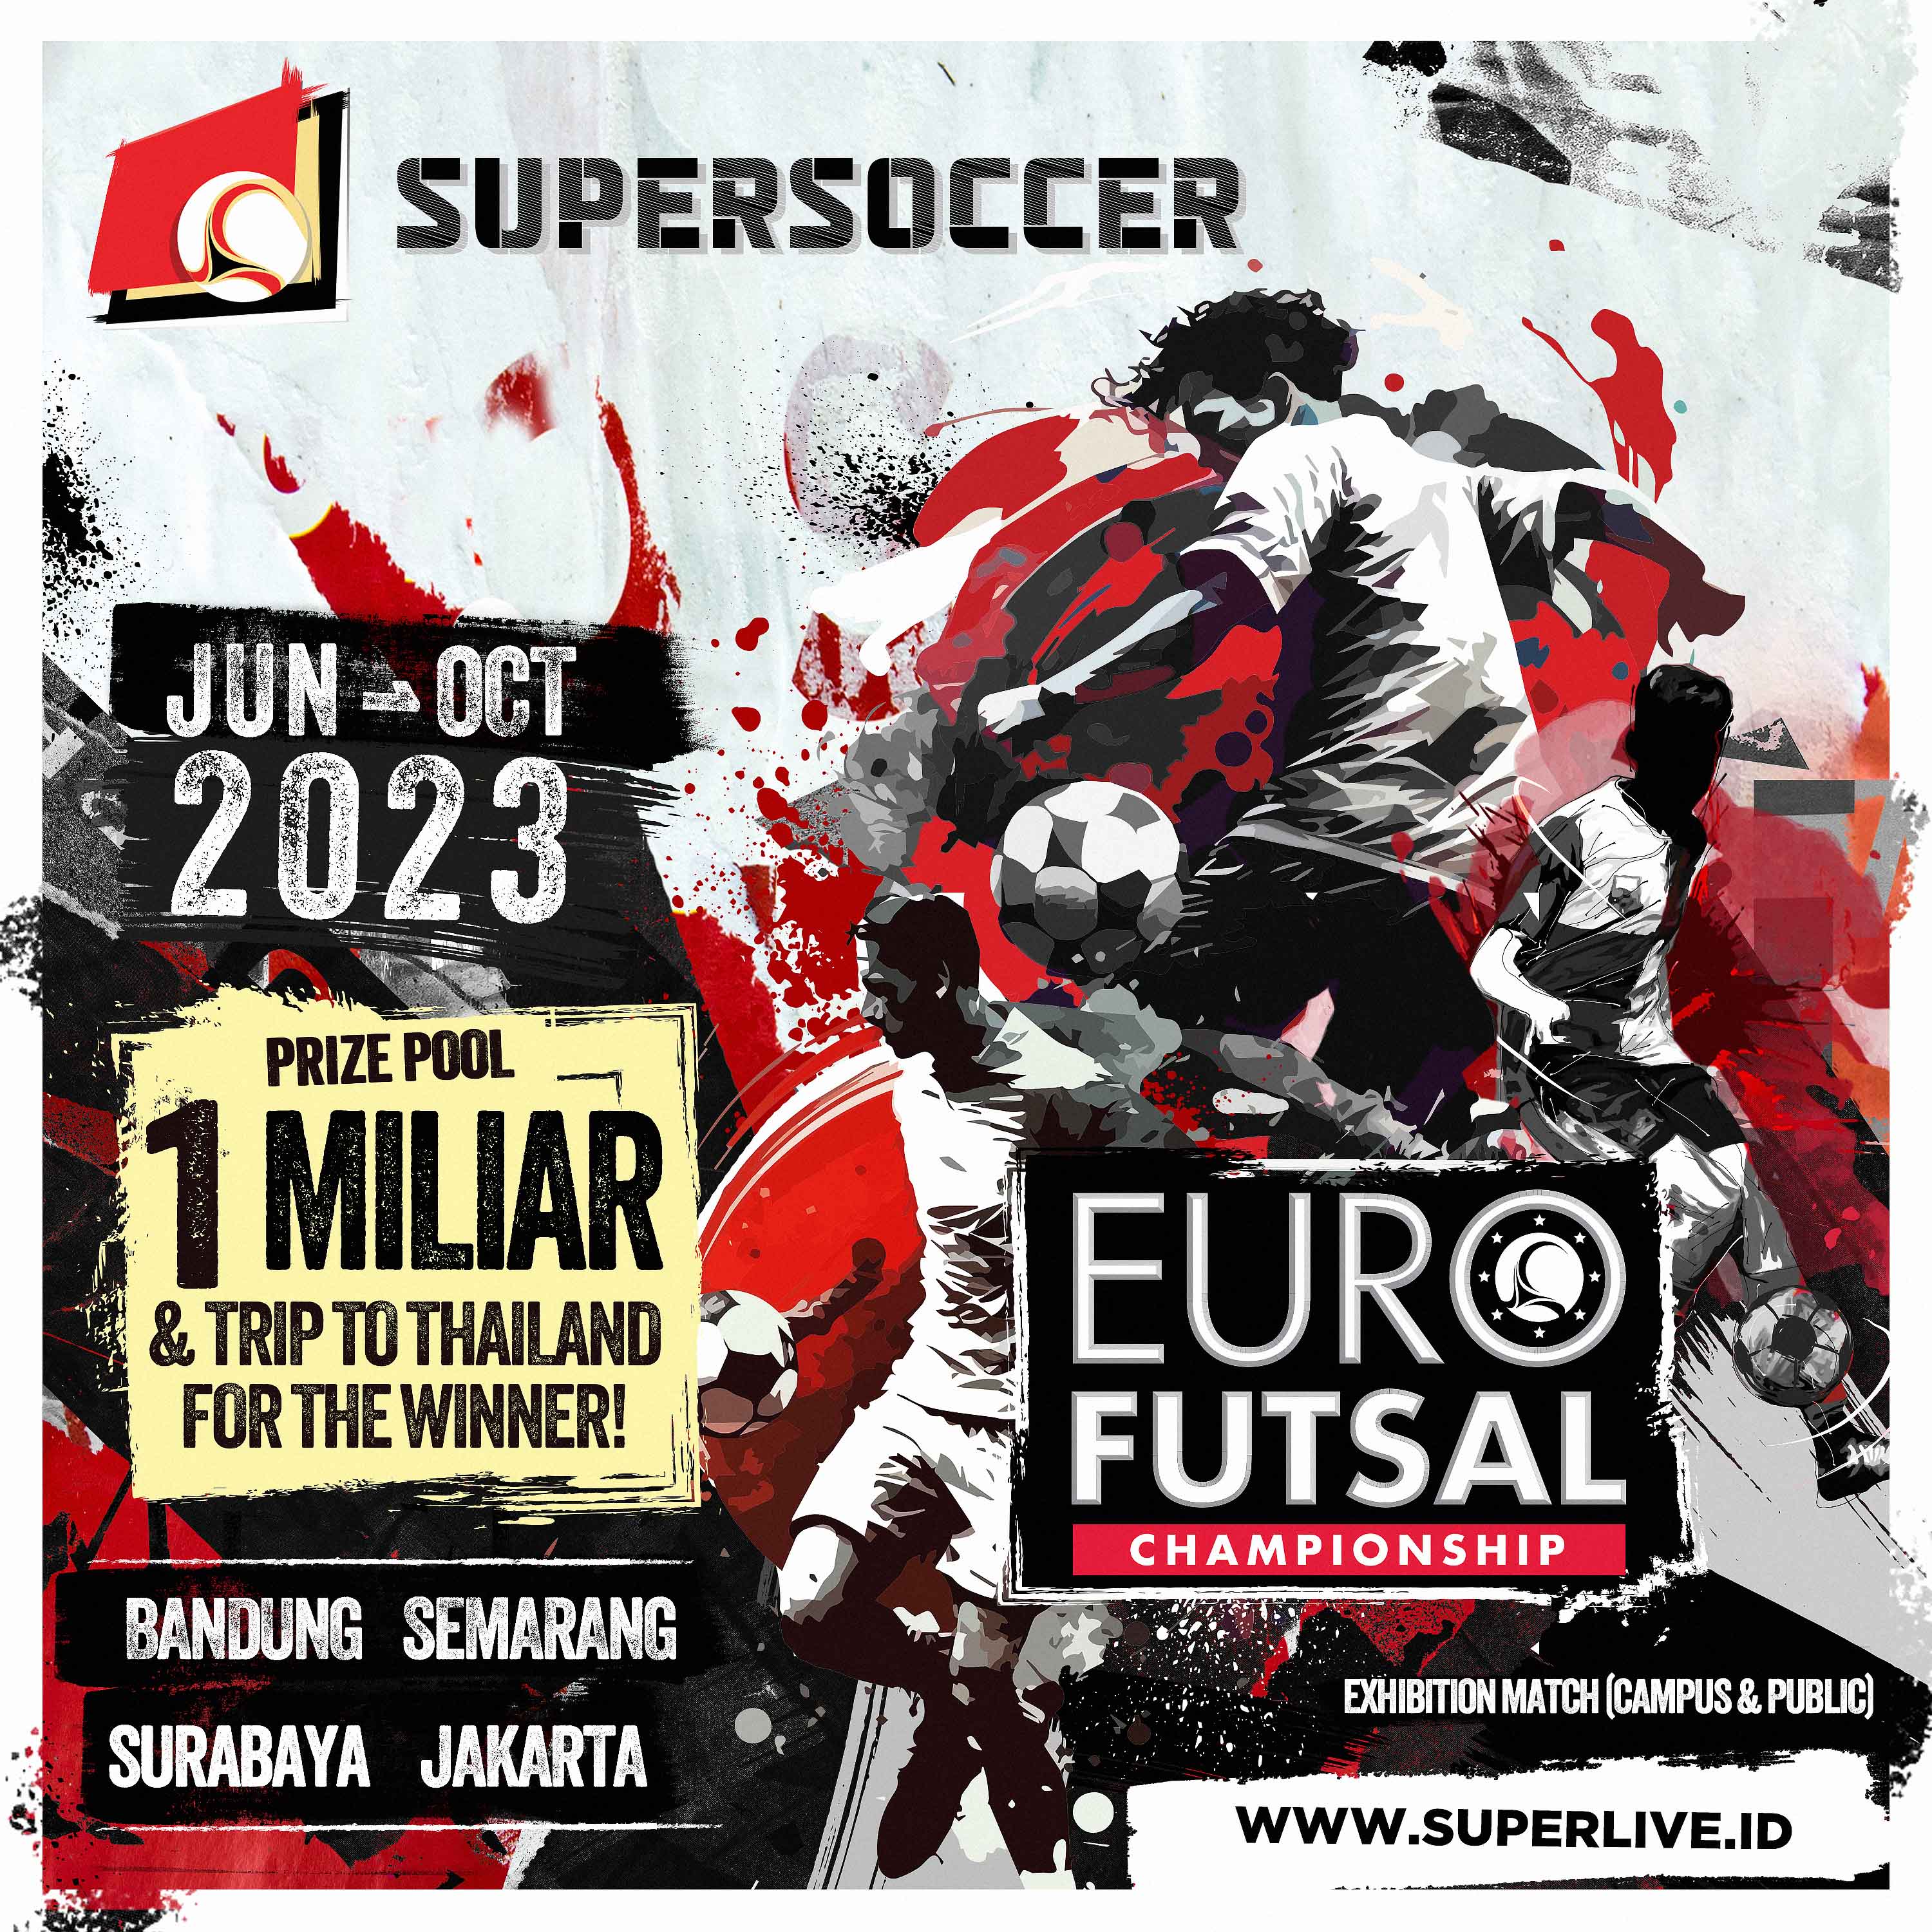 EURO Futsal Championship 2023